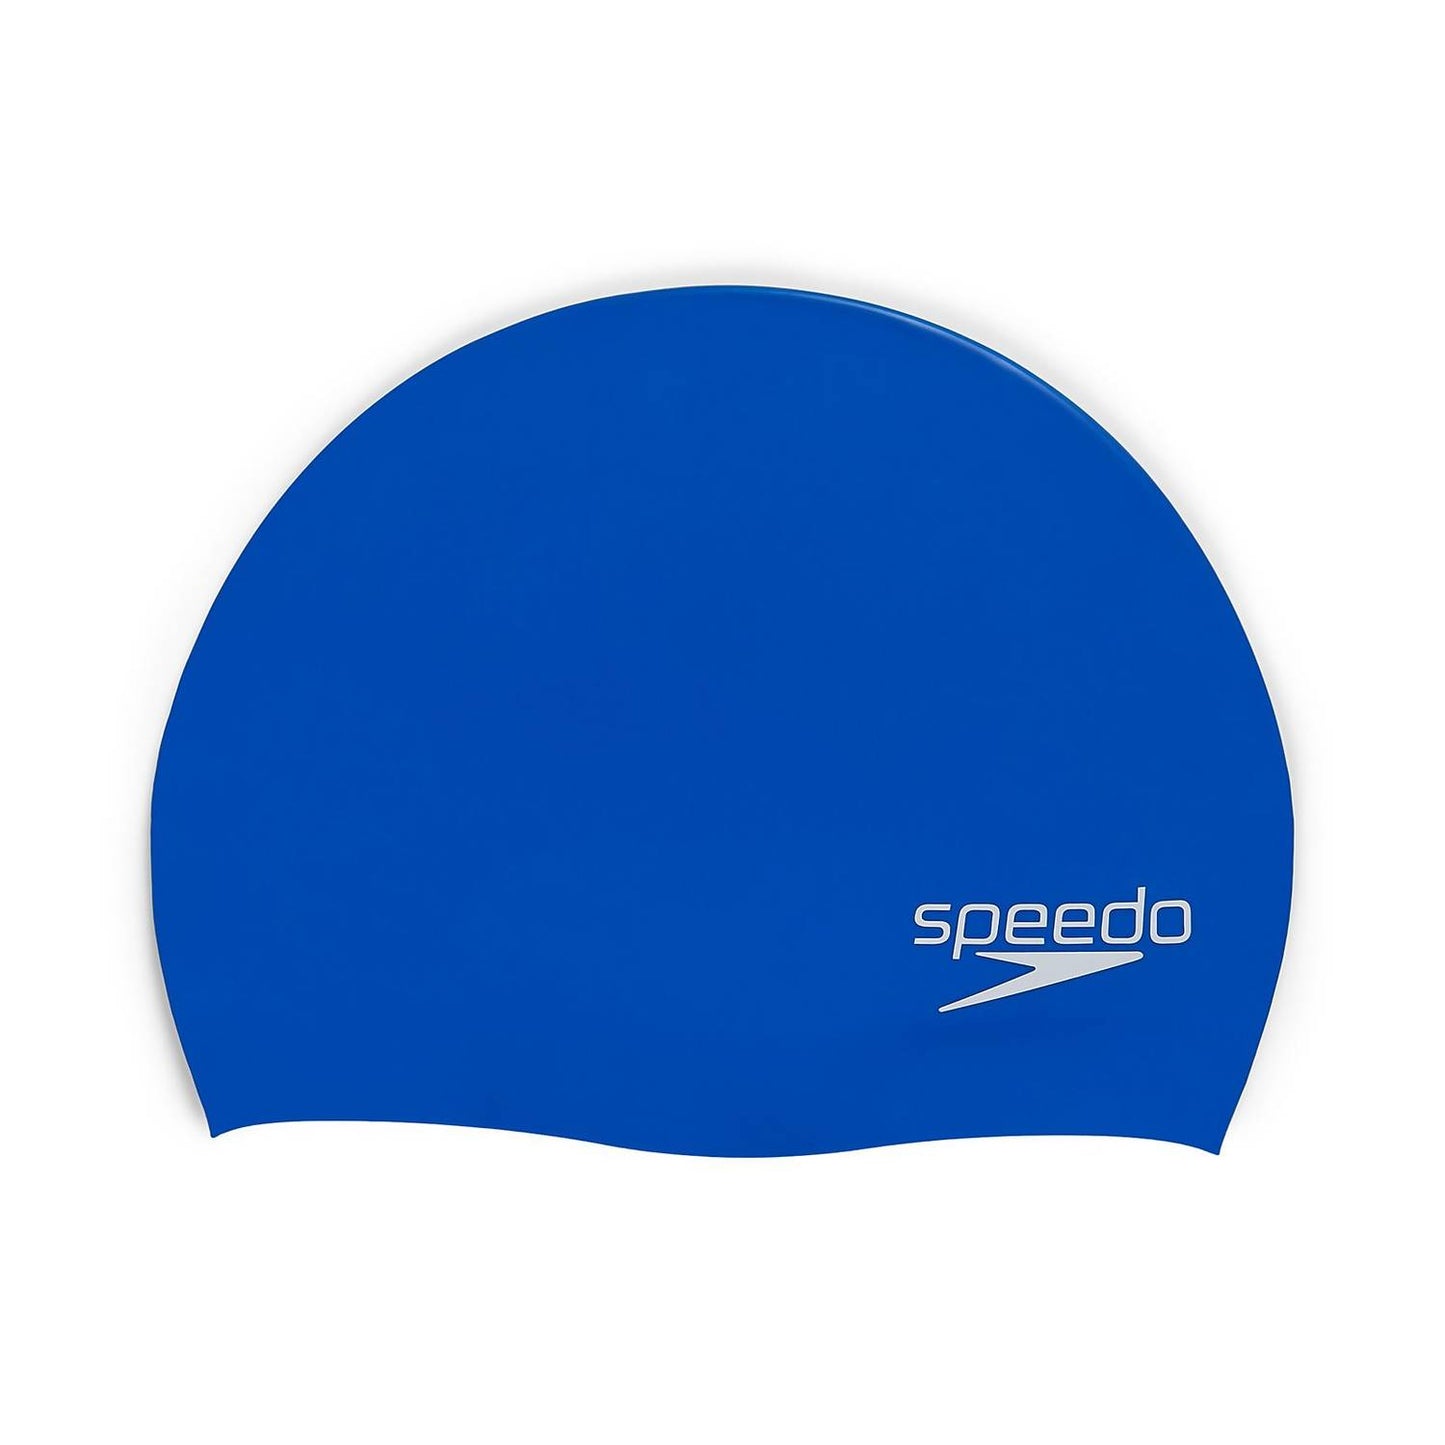 Speedo Silicone Elastomeric Adult Swim Cap - Blue